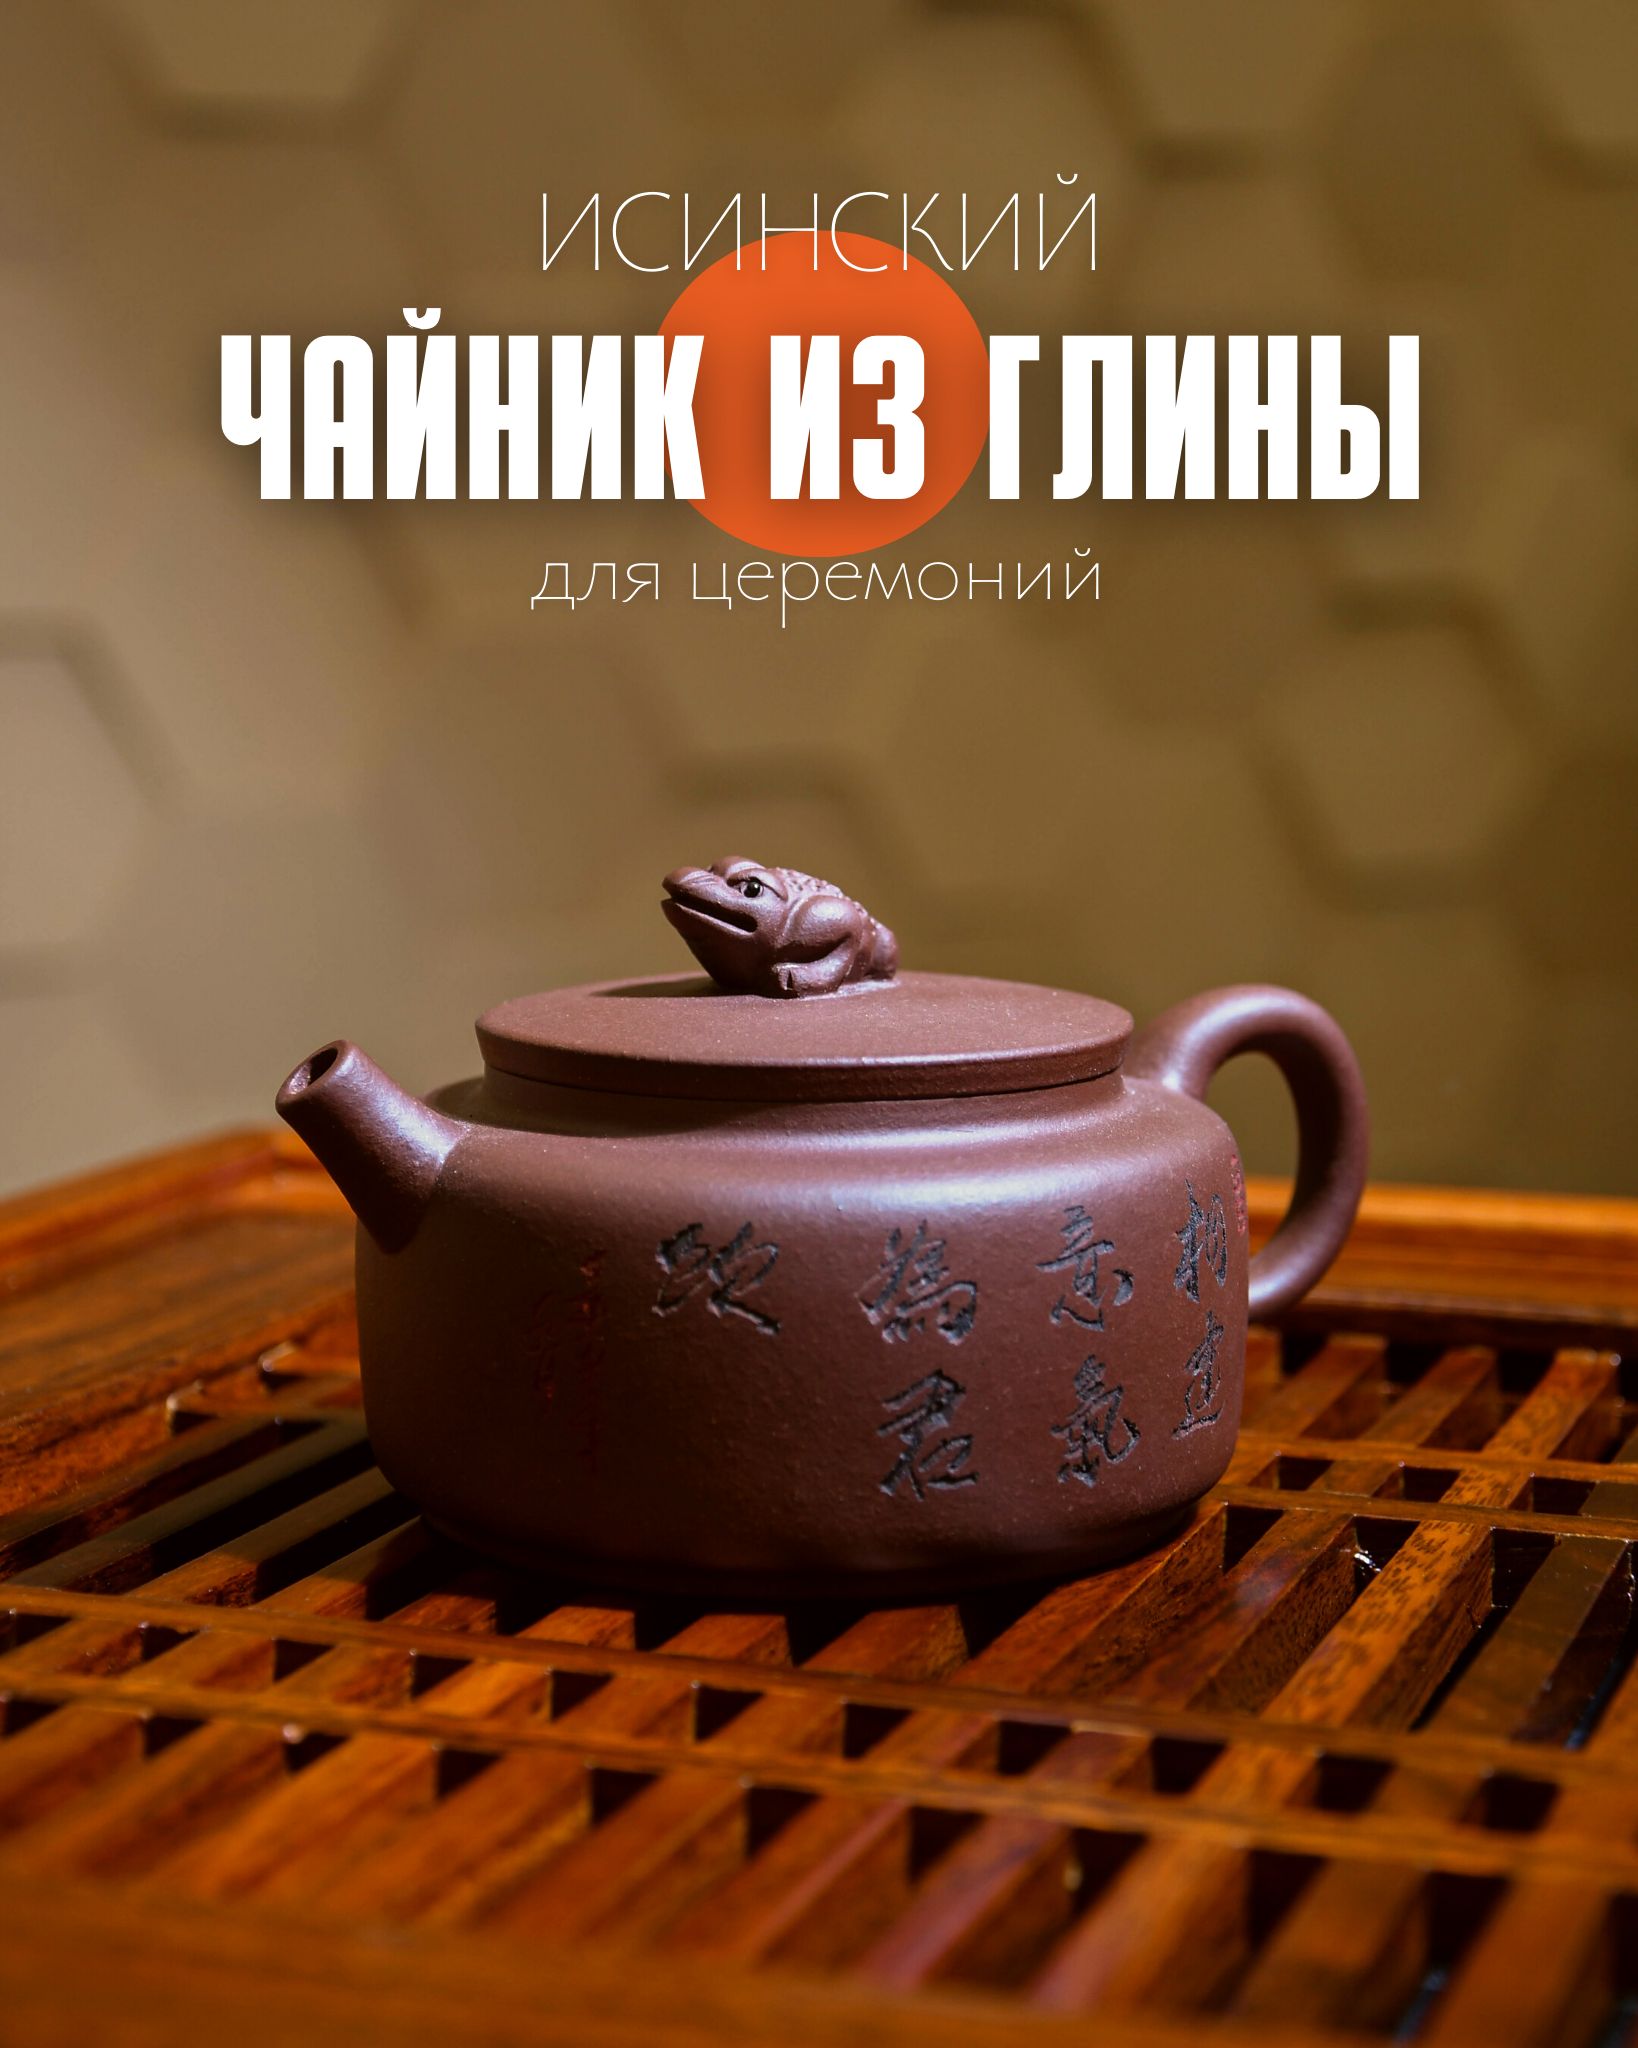 Крышки для чайников в Санкт-Петербурге